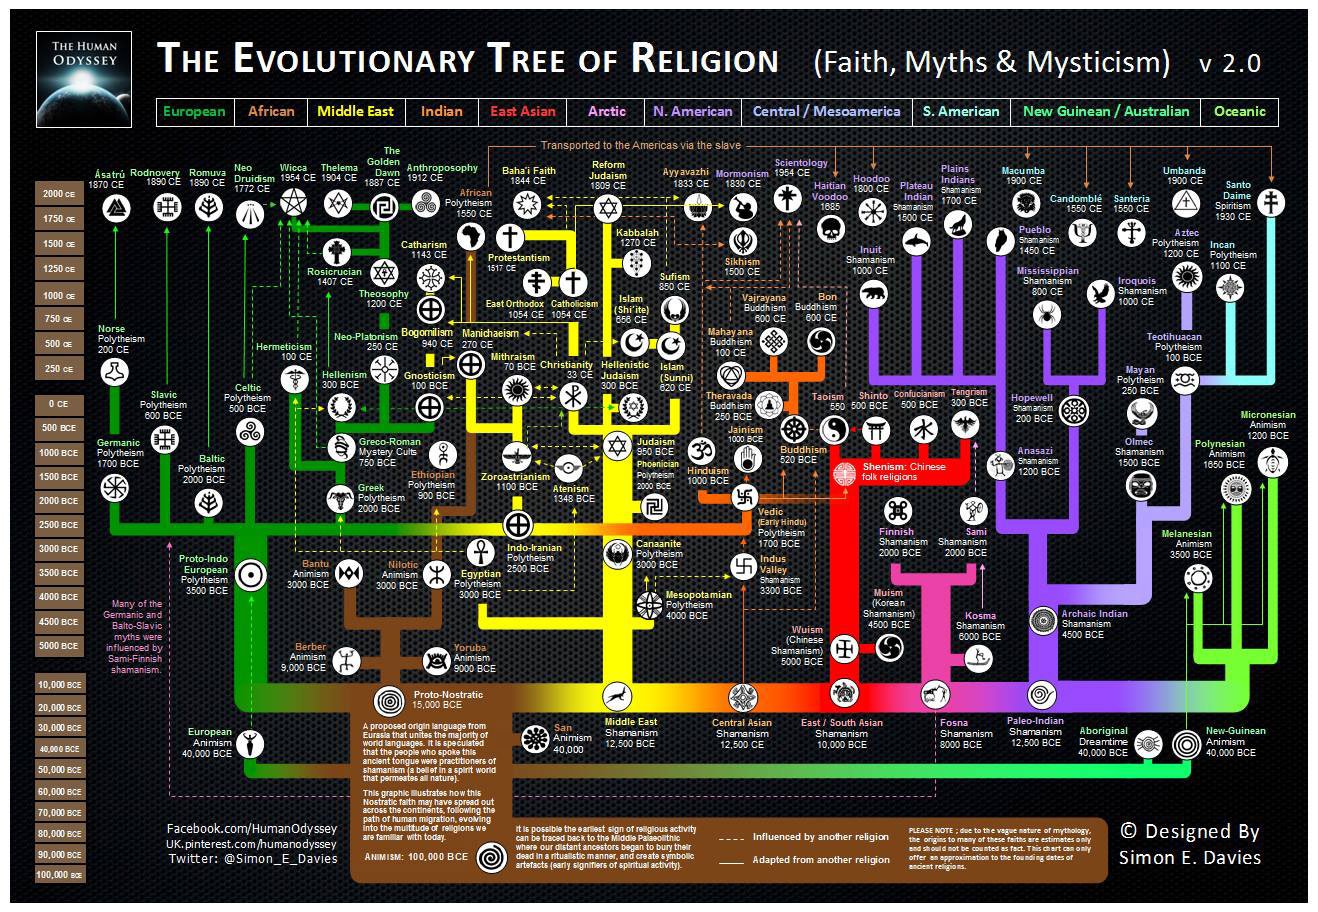 THE EVOLUTIONARY TREE OF RELIGION (FAITH, MYTHS, MYSTICISM)